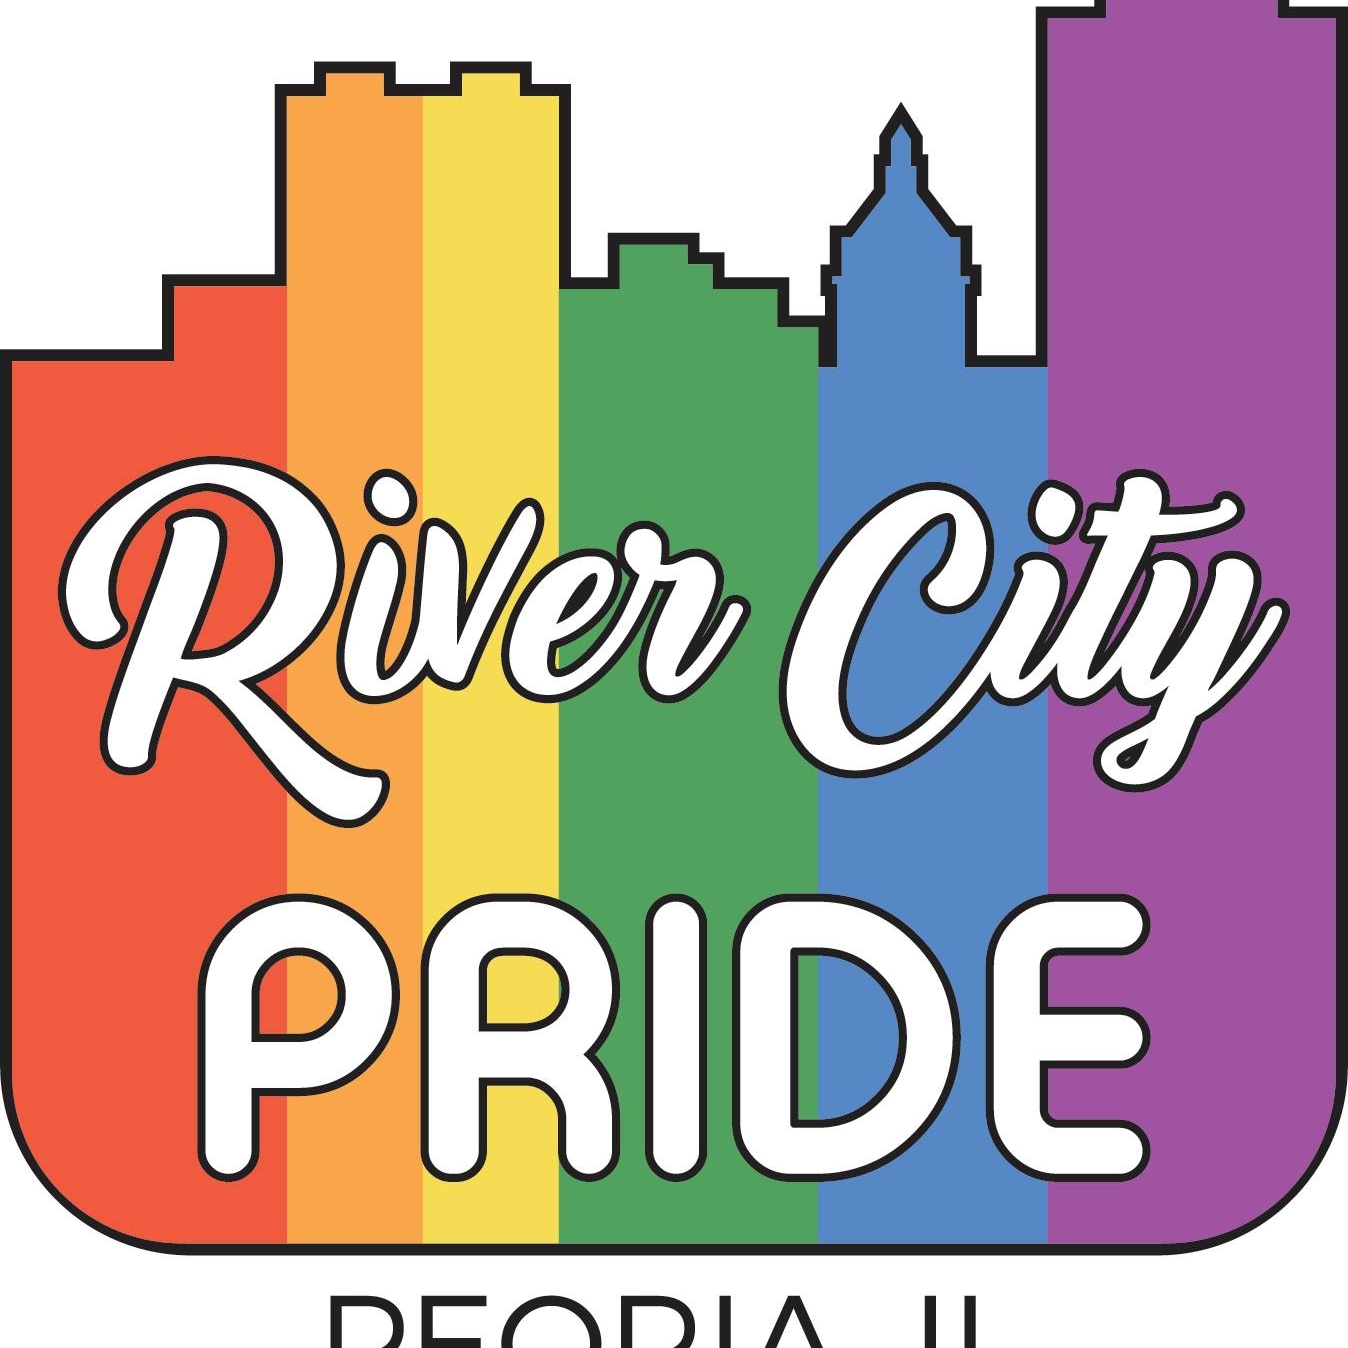 River City Pride Festival, Peoria IL